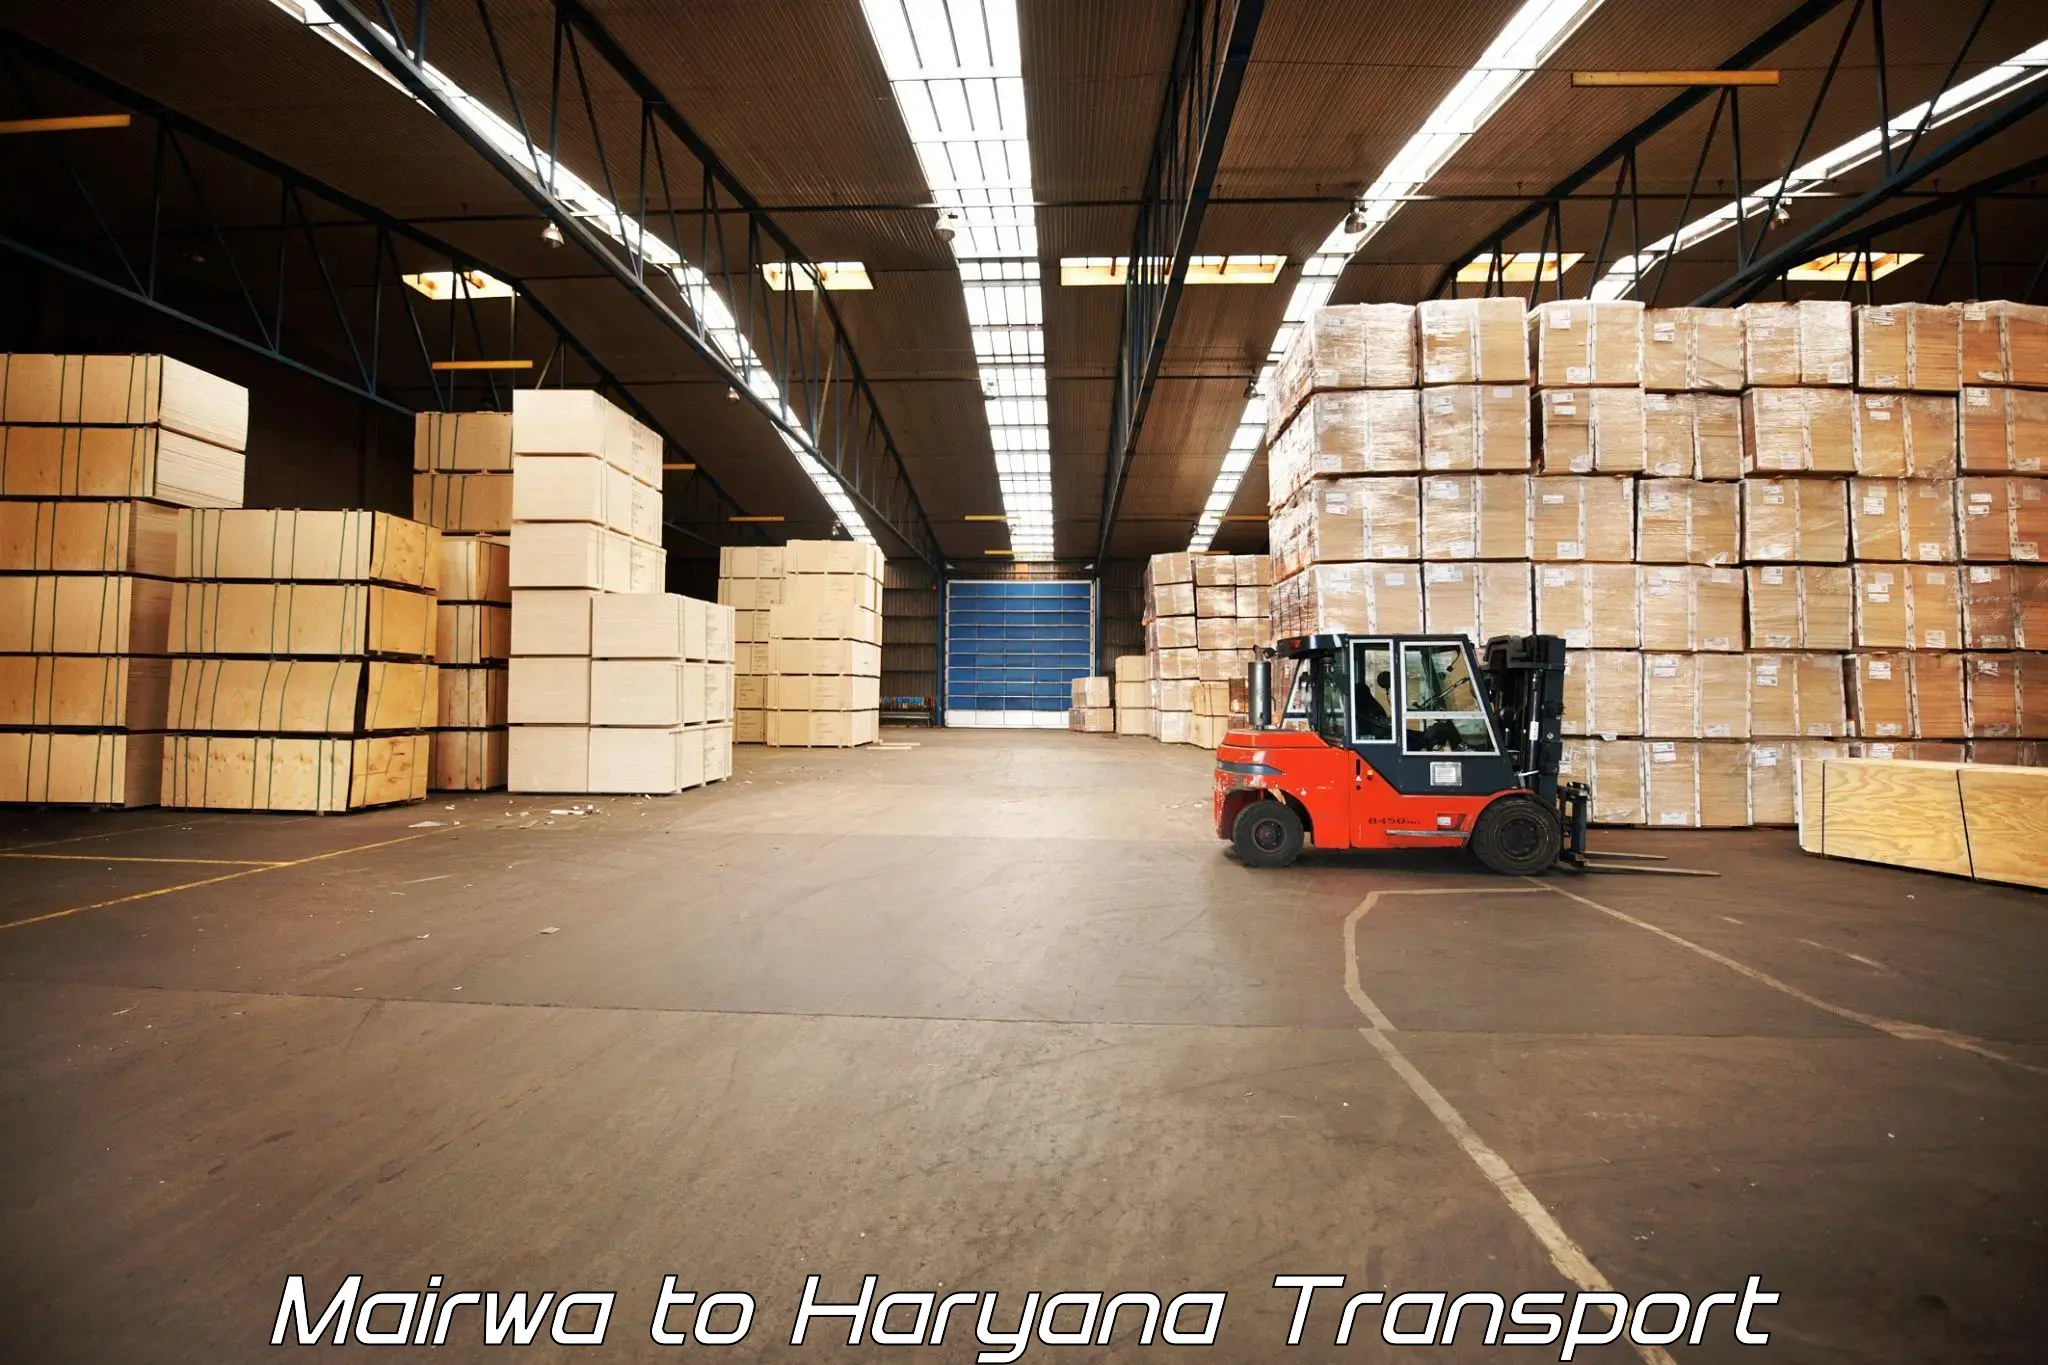 Interstate goods transport Mairwa to Bilaspur Haryana